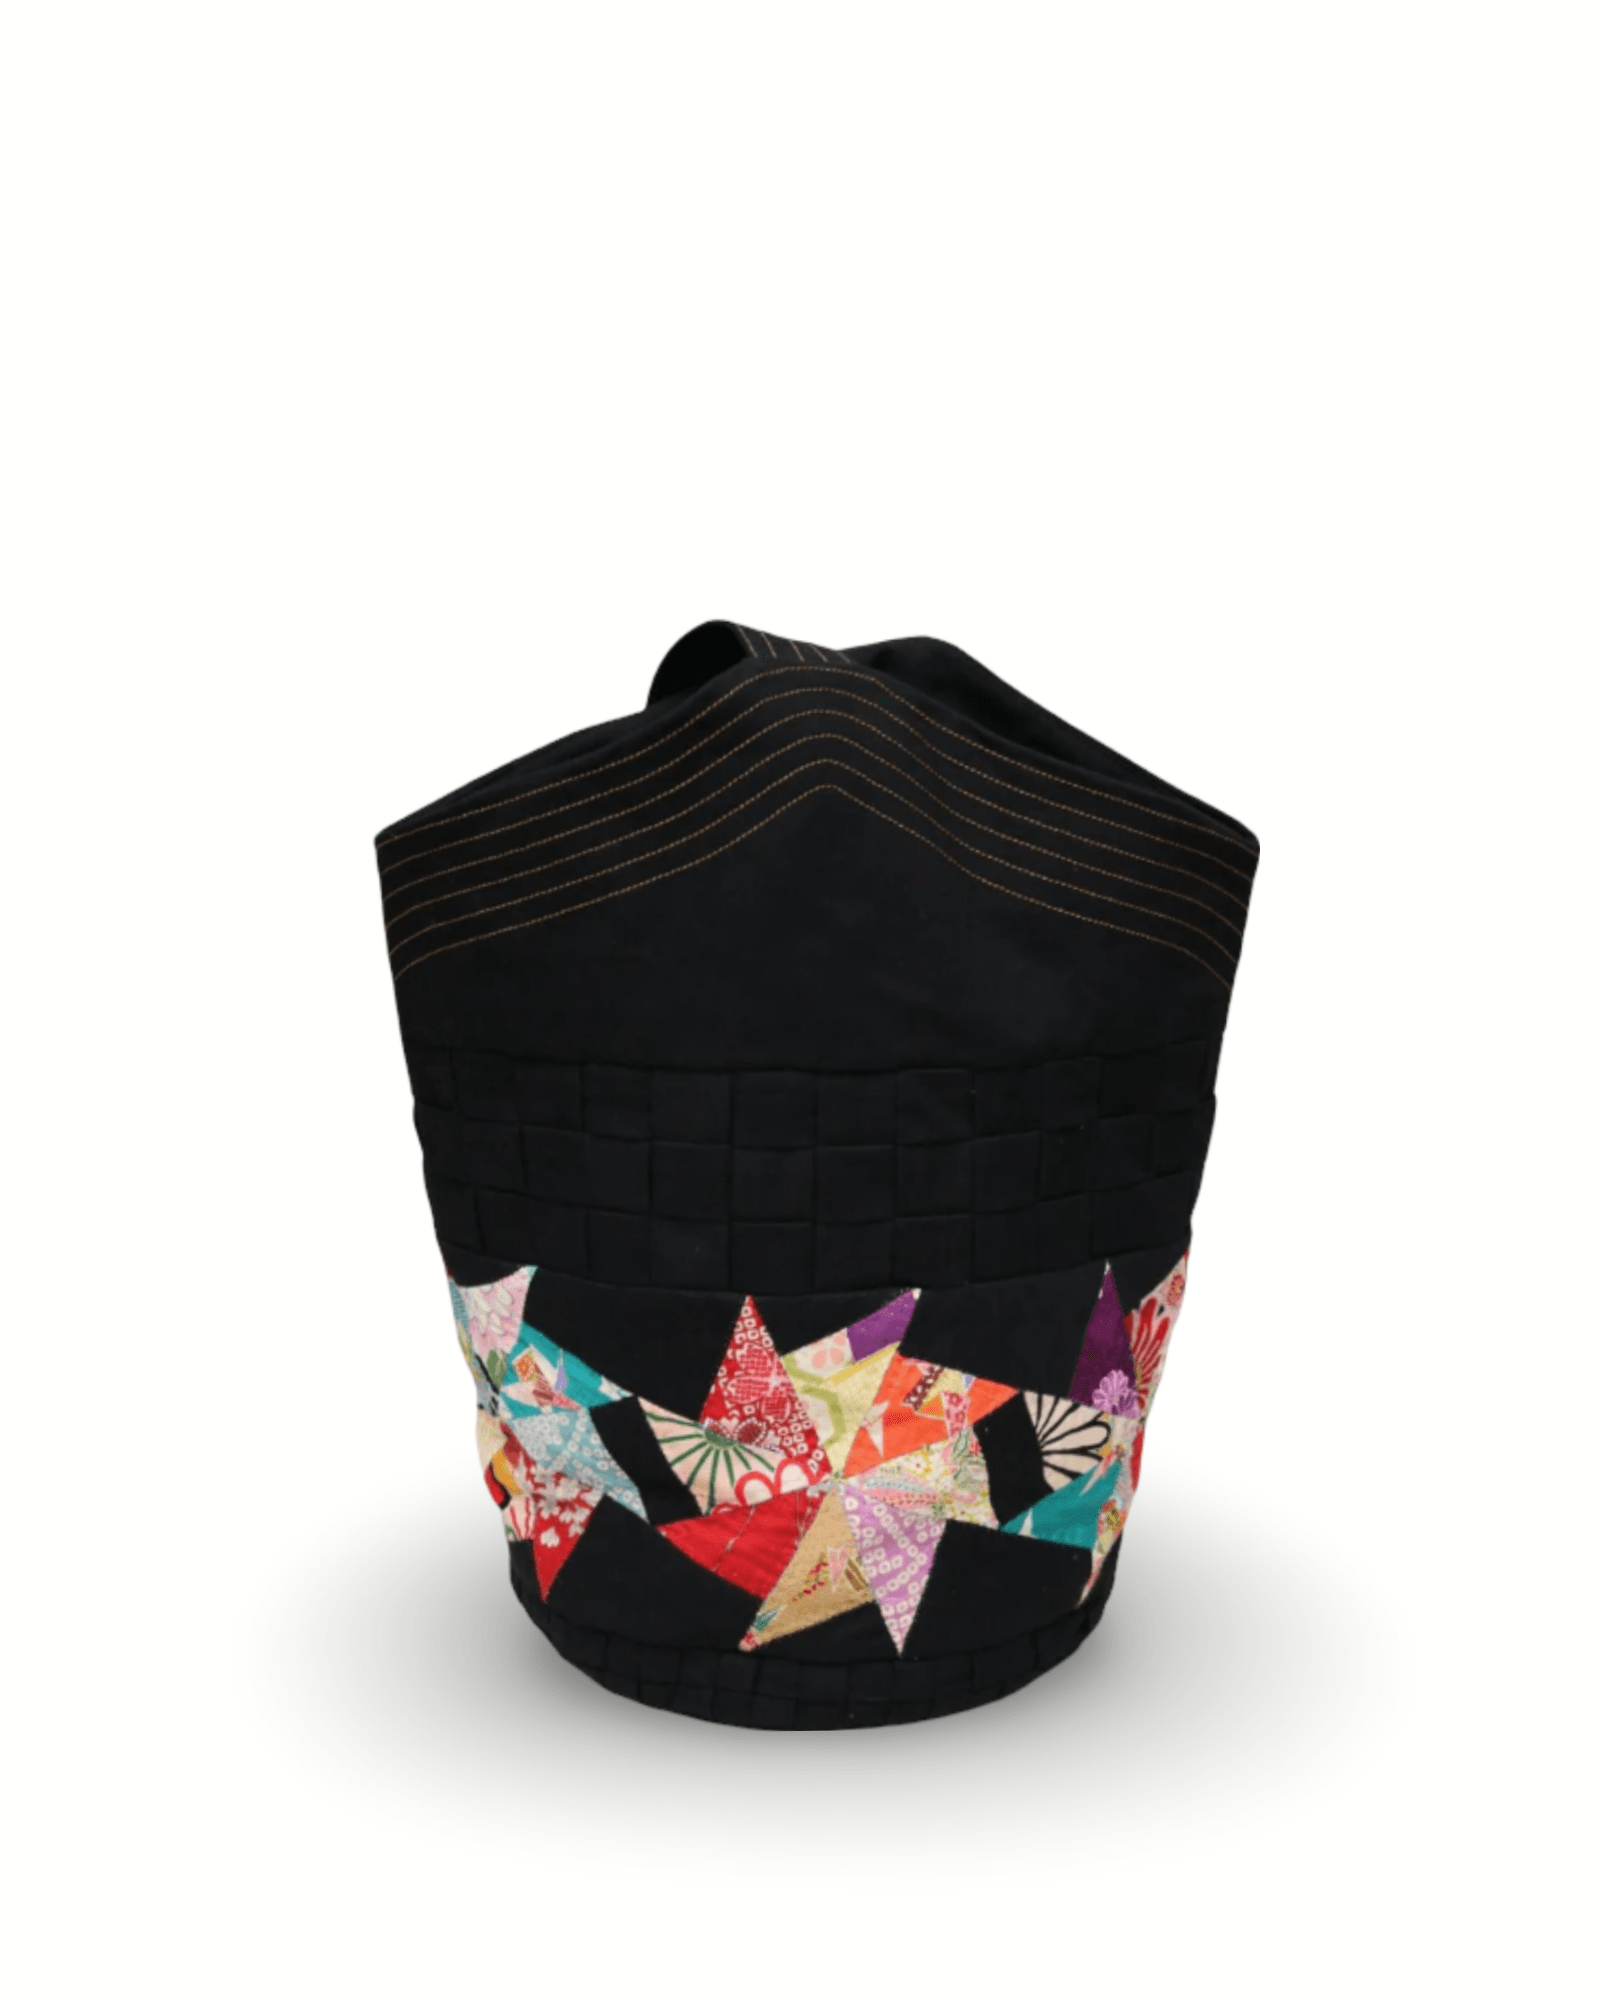 Origami Inspired Bucket Bag - ORIEN VIN TIQUE